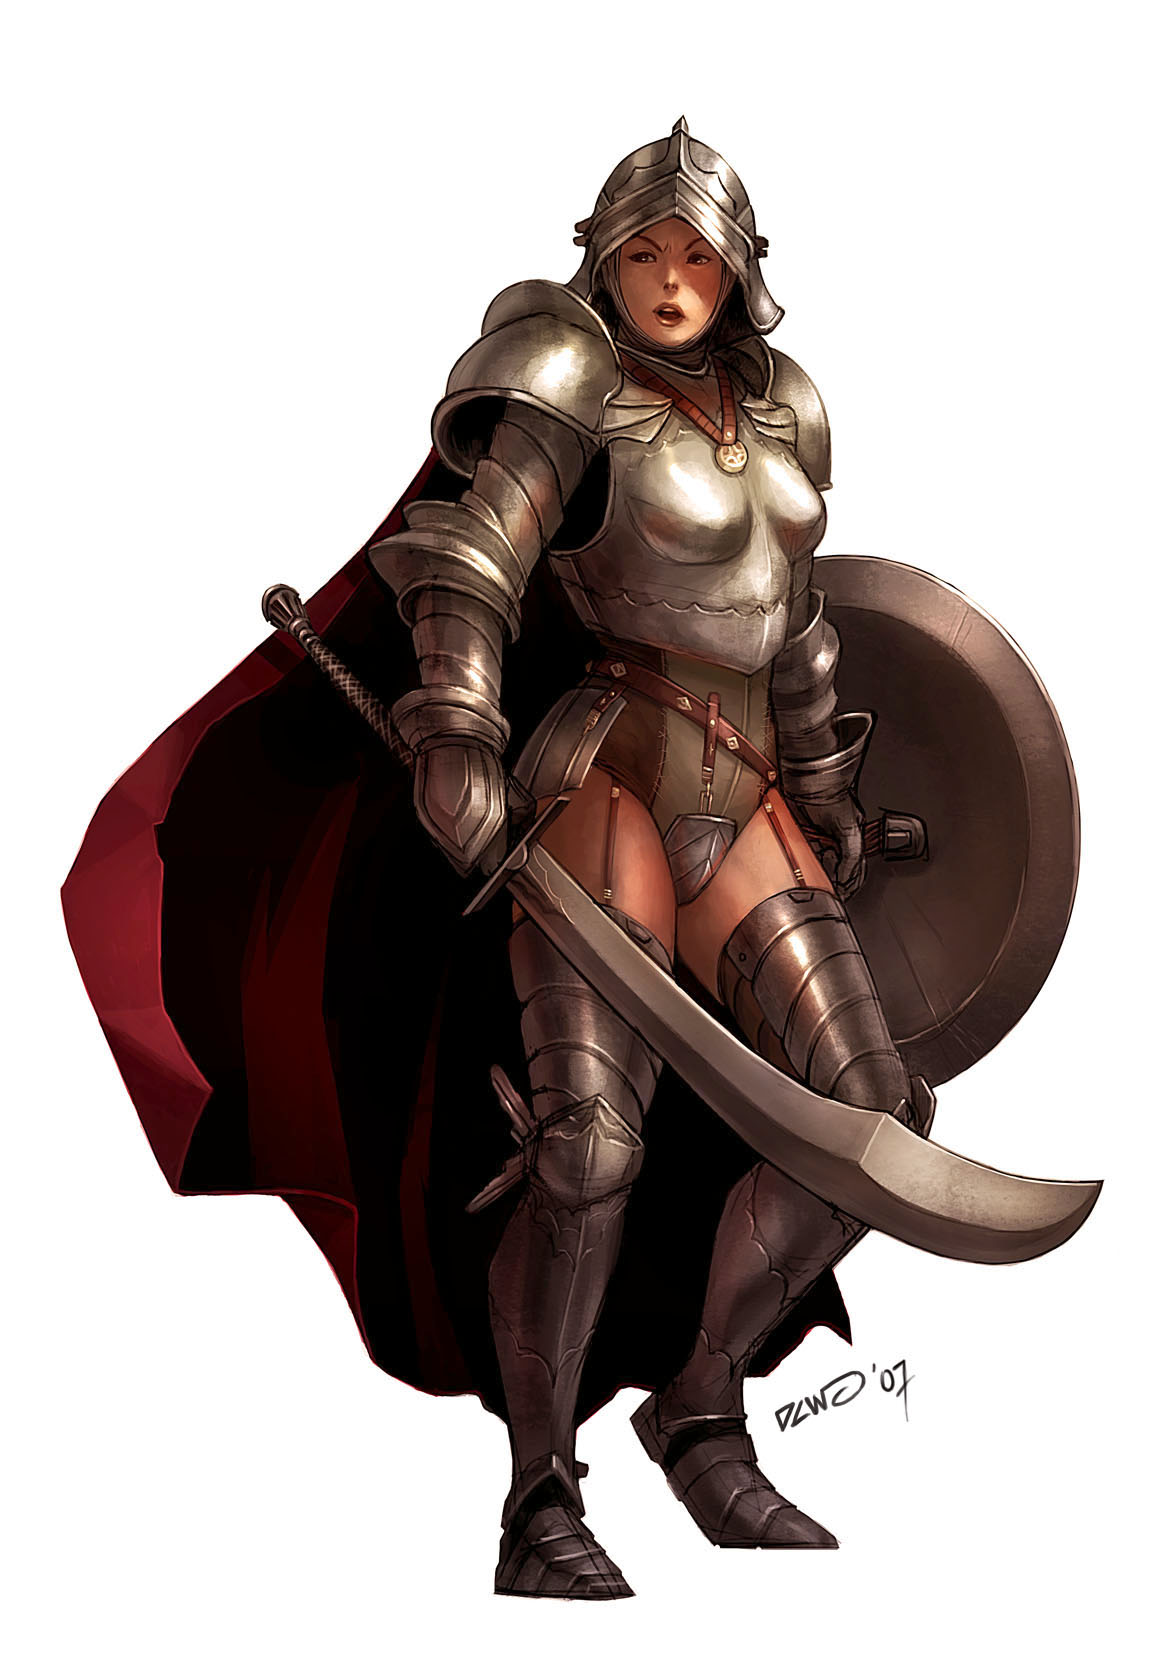 Female Knight by dcwj